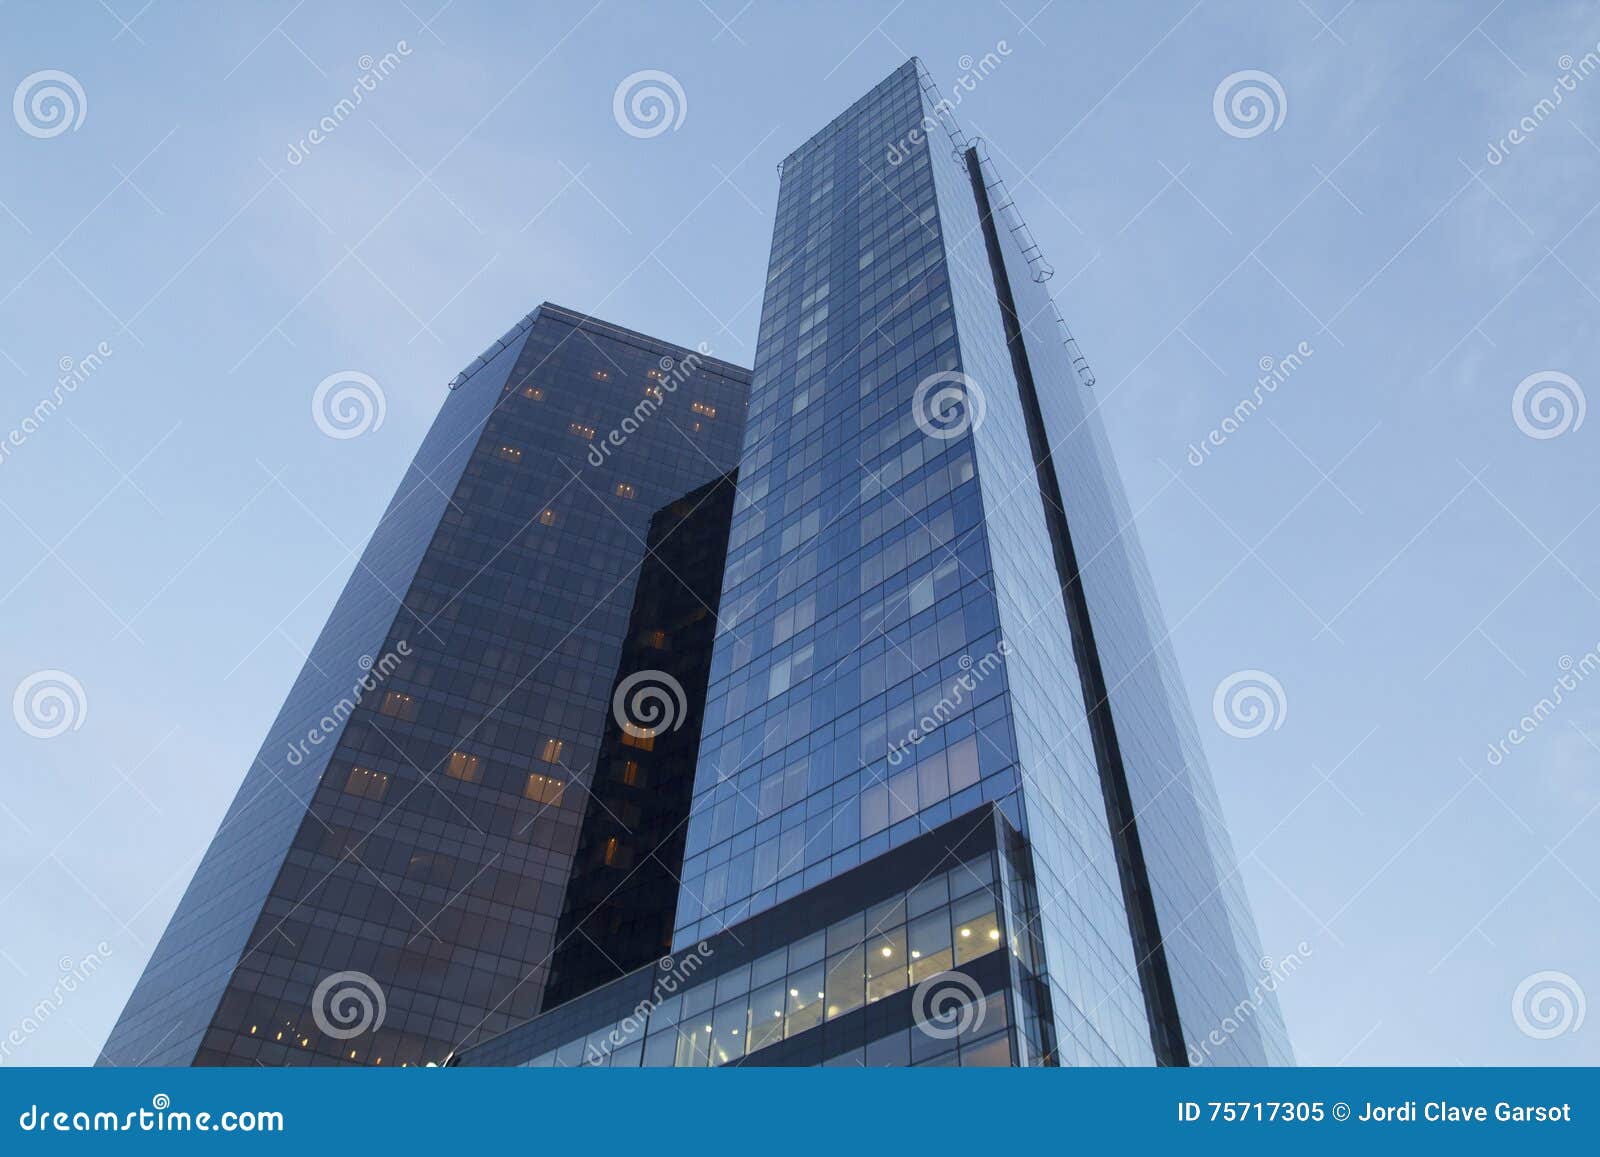 high skyscraper